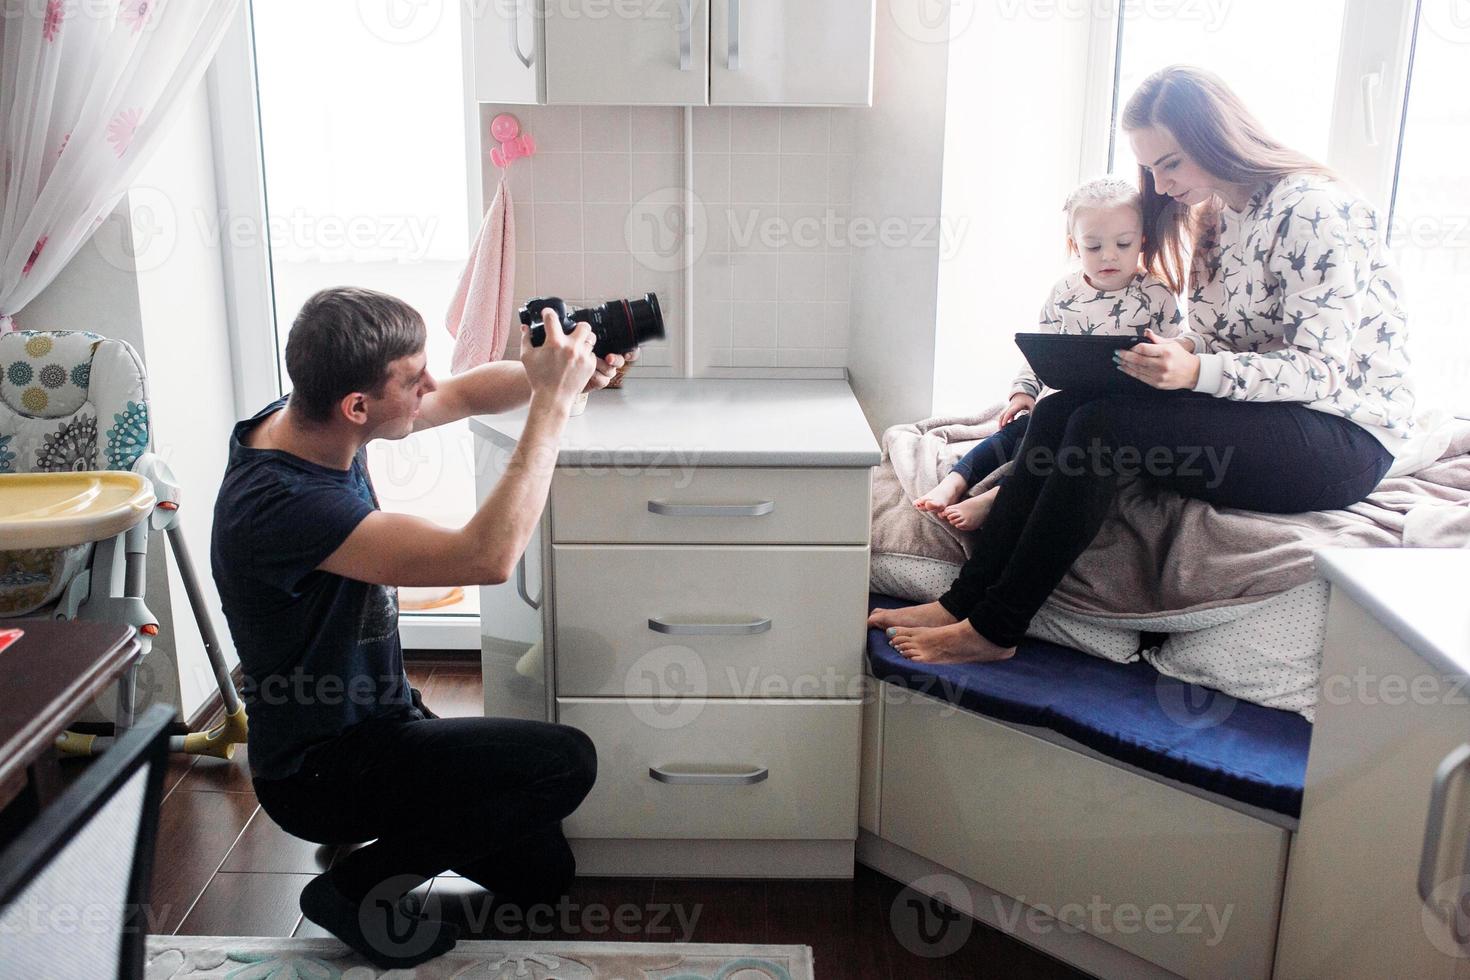 padre tomando fotos de su hija y esposa